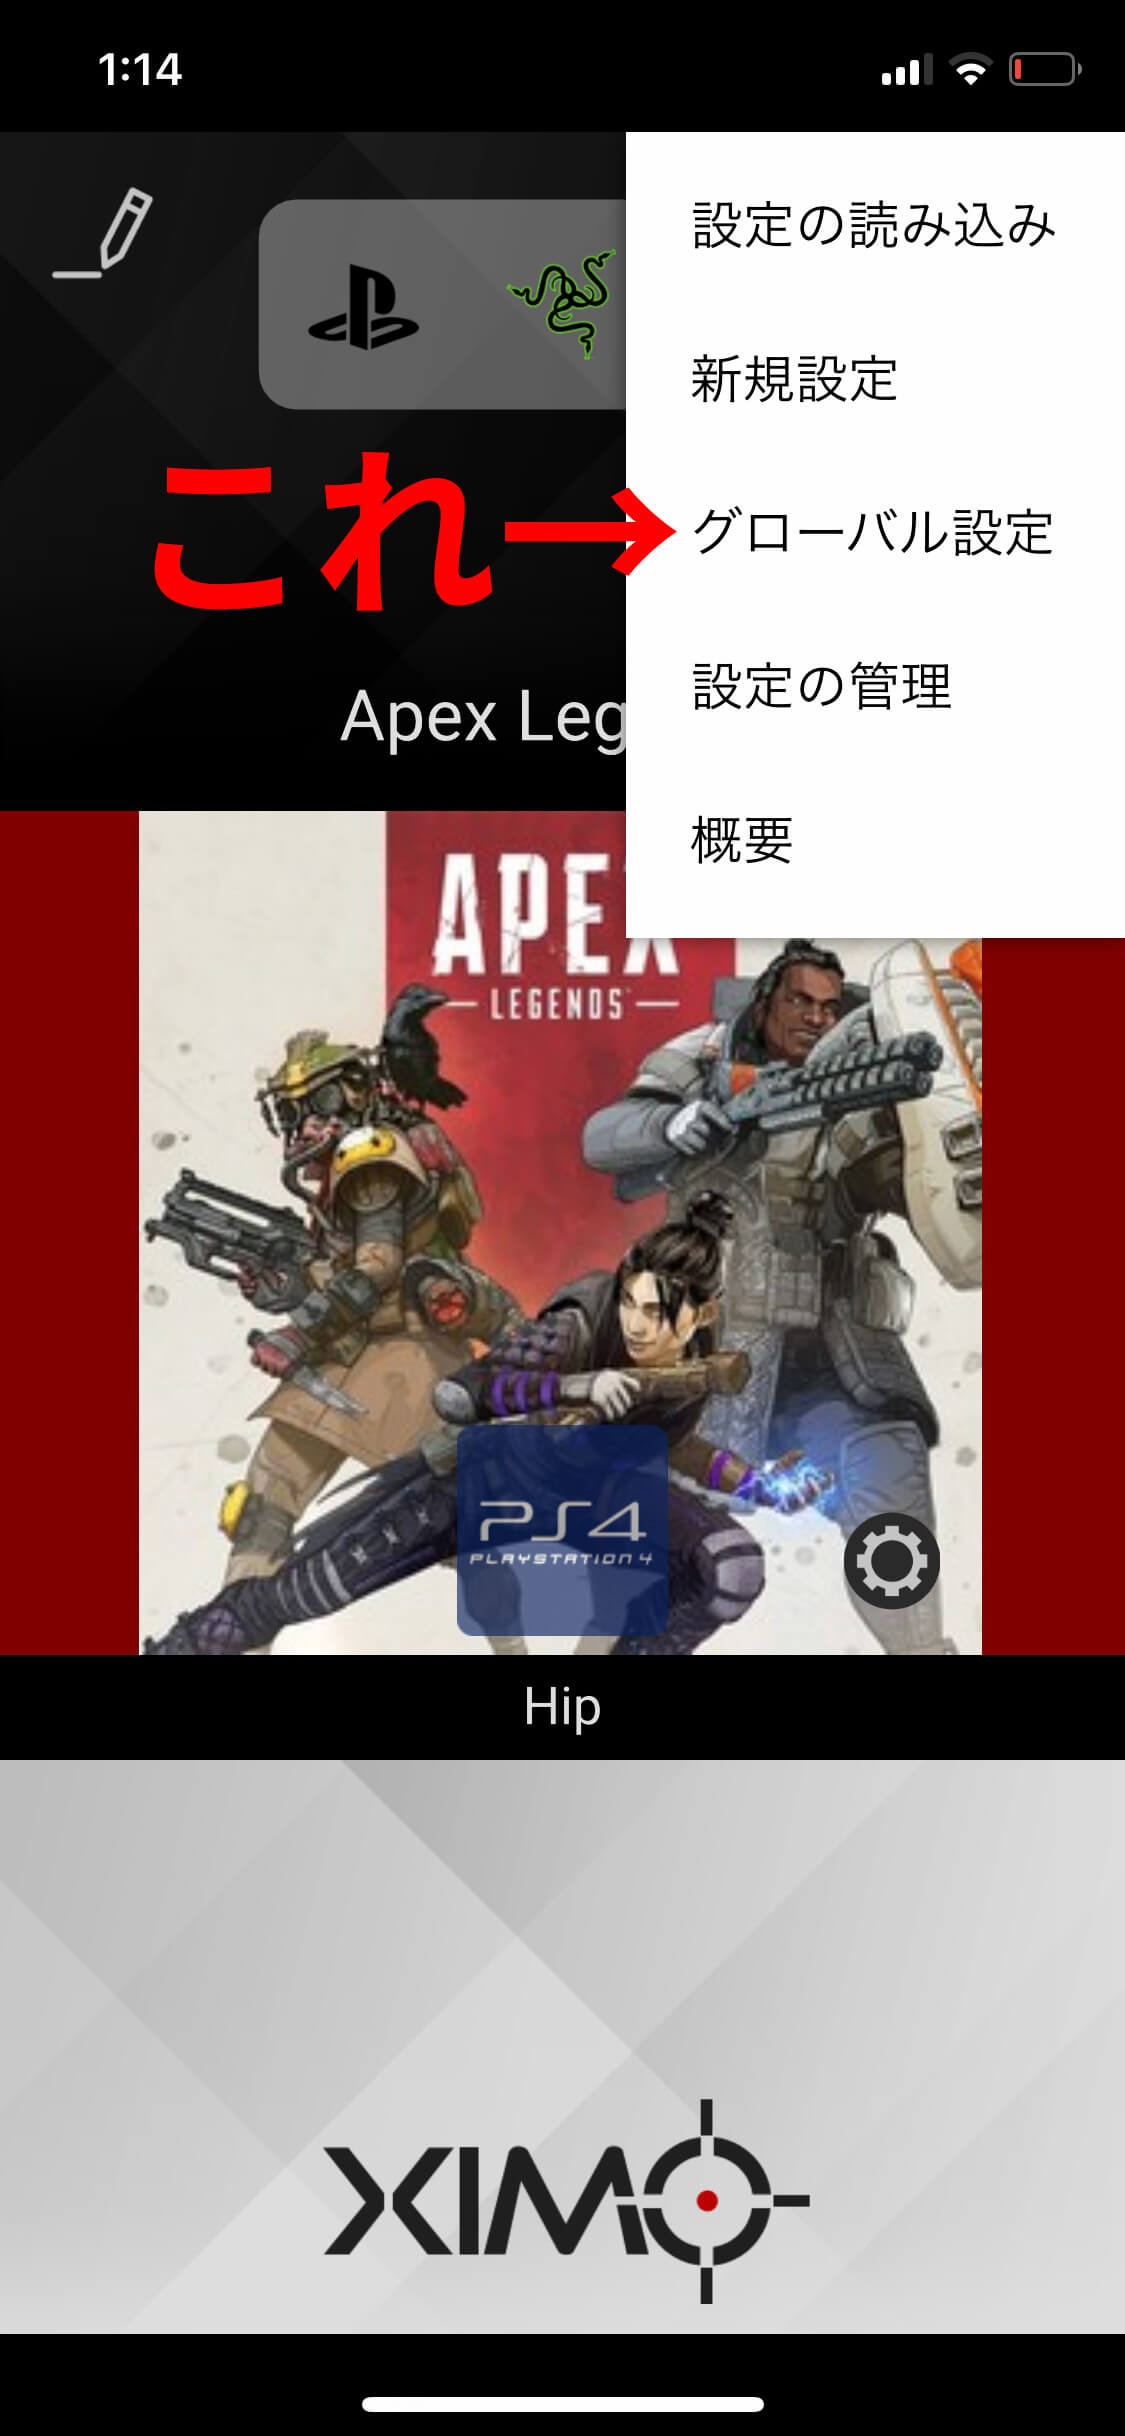 【Apex Legends】本当は教えたくないXIM APEXの最強設定方法を公開します【マウサー】 | うた通信